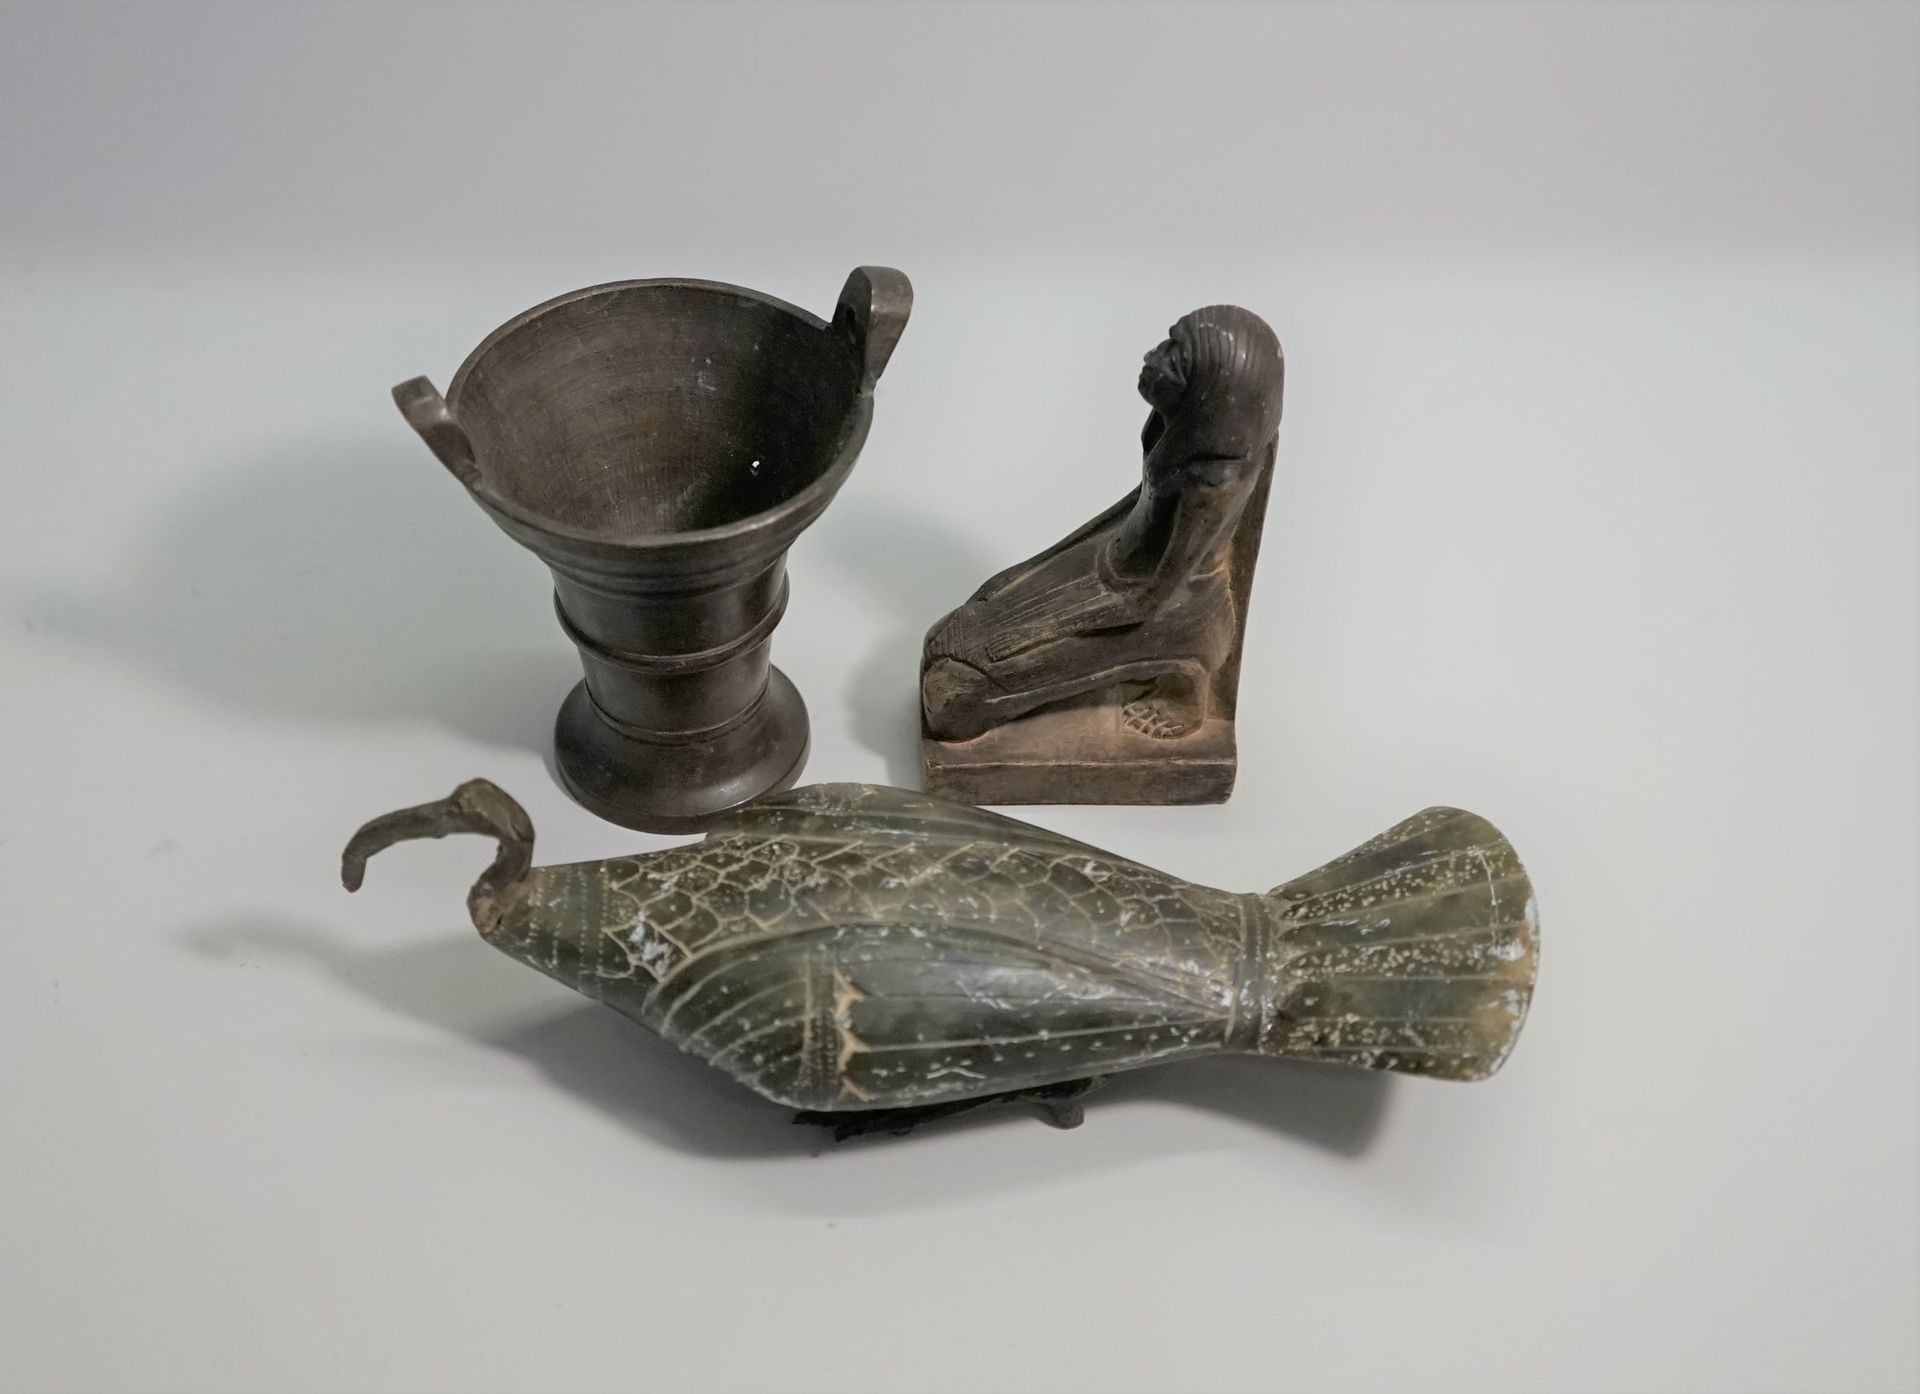 Null 一套三件物品，包括一个金属和复合材料的躺着的朱鹮，一个微型铜臼和铁杵，以及一个埃及风格的跪着的人物。

9.5厘米、9.5厘米和19厘米